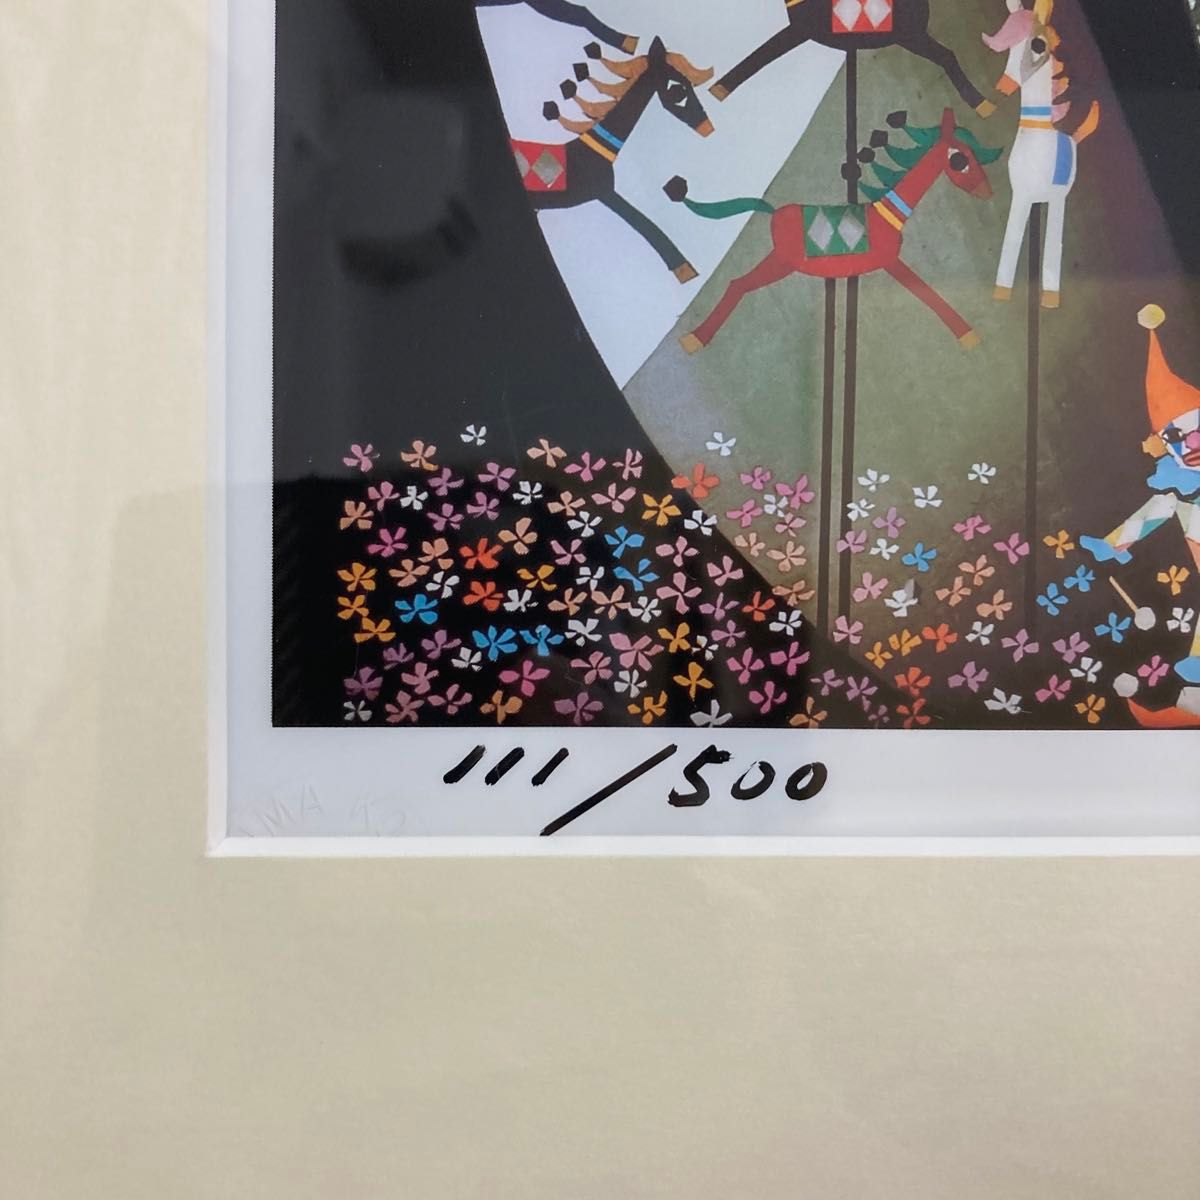 【真作保証】藤城清治「森のサーカス」セリグラフDX 直筆サイン 版画 絵画